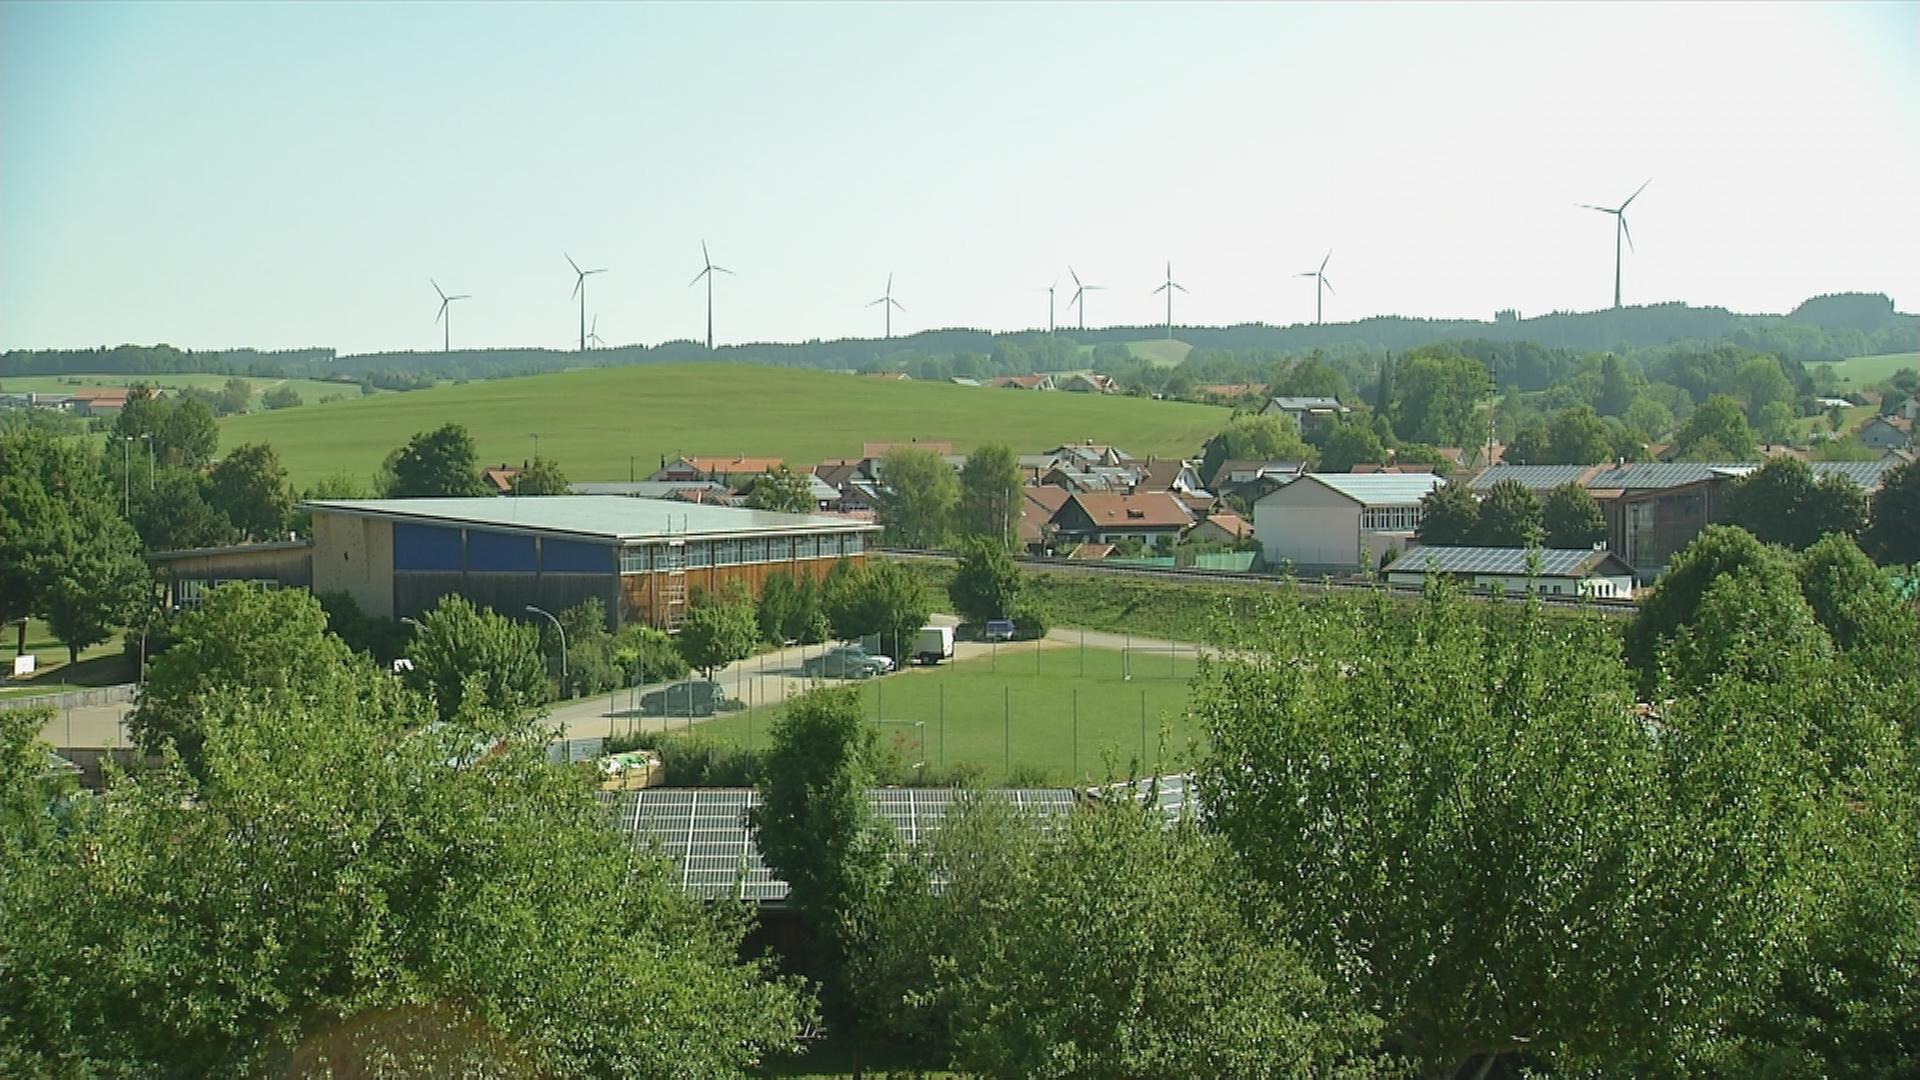 Gebäude mit Solarplatten auf dem Dach und Grünflächen, am Horizont sind Windräder